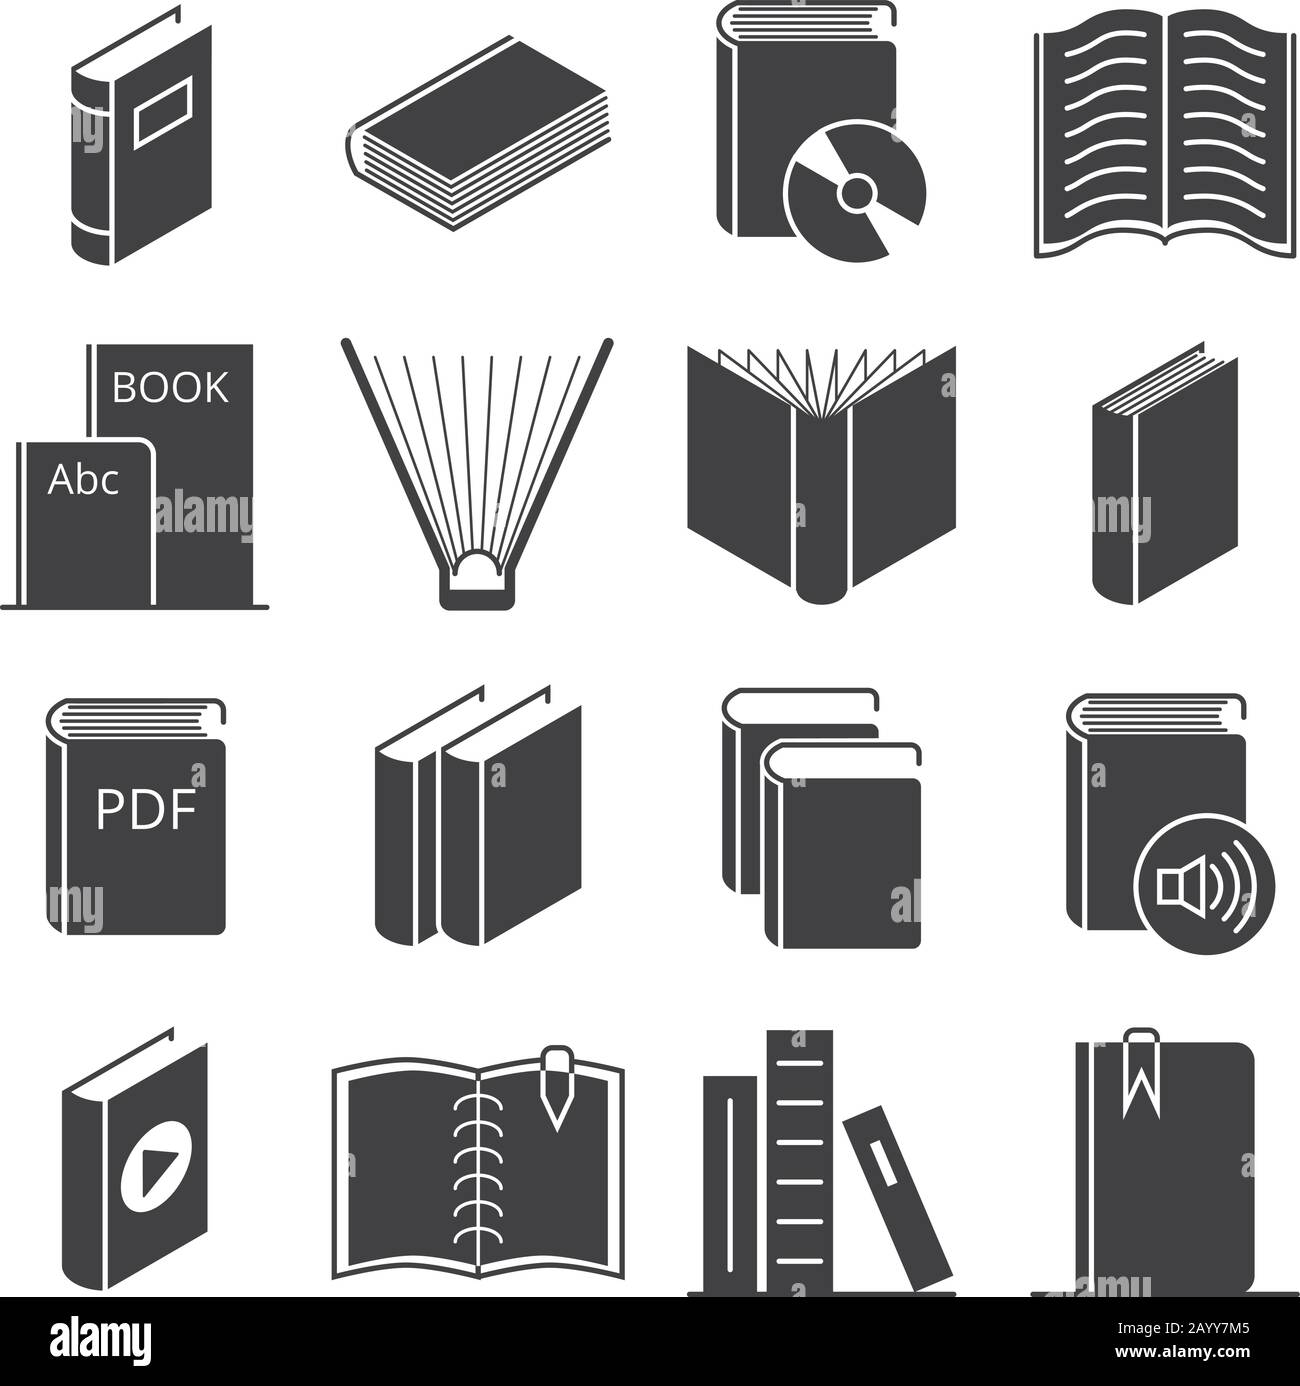 Libros iconos vectoriales. Libro de literatura para aprender e ilustrar libros de audio y video Ilustración del Vector